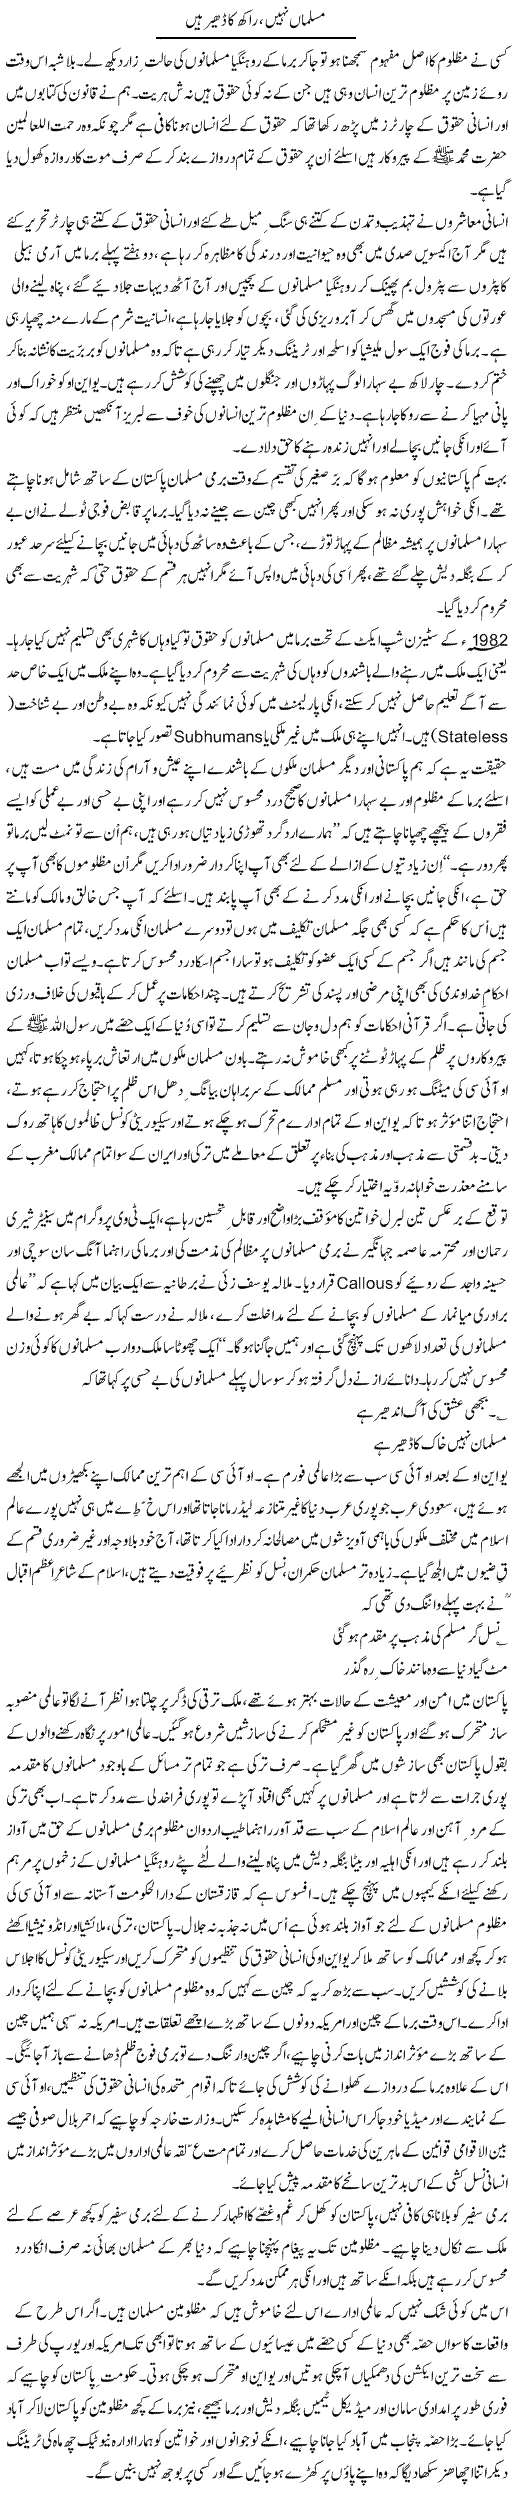 Musalman Nahi, Raakh Ka Dhair Hain | Zulfiqar Ahmed Cheema | Daily Urdu Columns